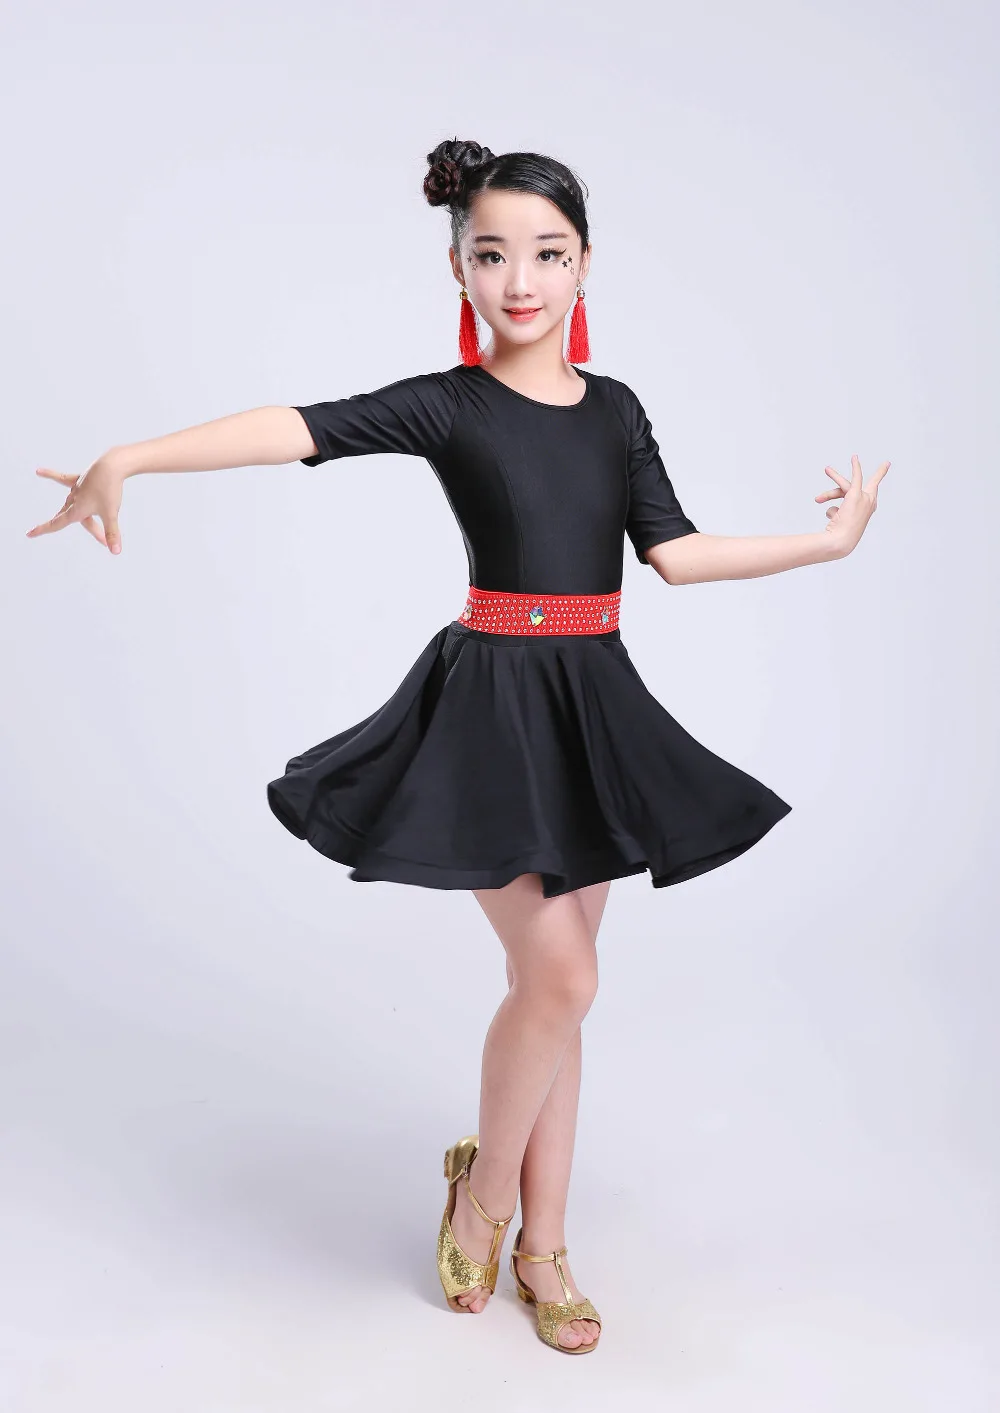 Ребенок малыш дети Профессиональный латинские танцы для продажи платье девушки модели бальные танцы платья Дети Румба ча костюмы